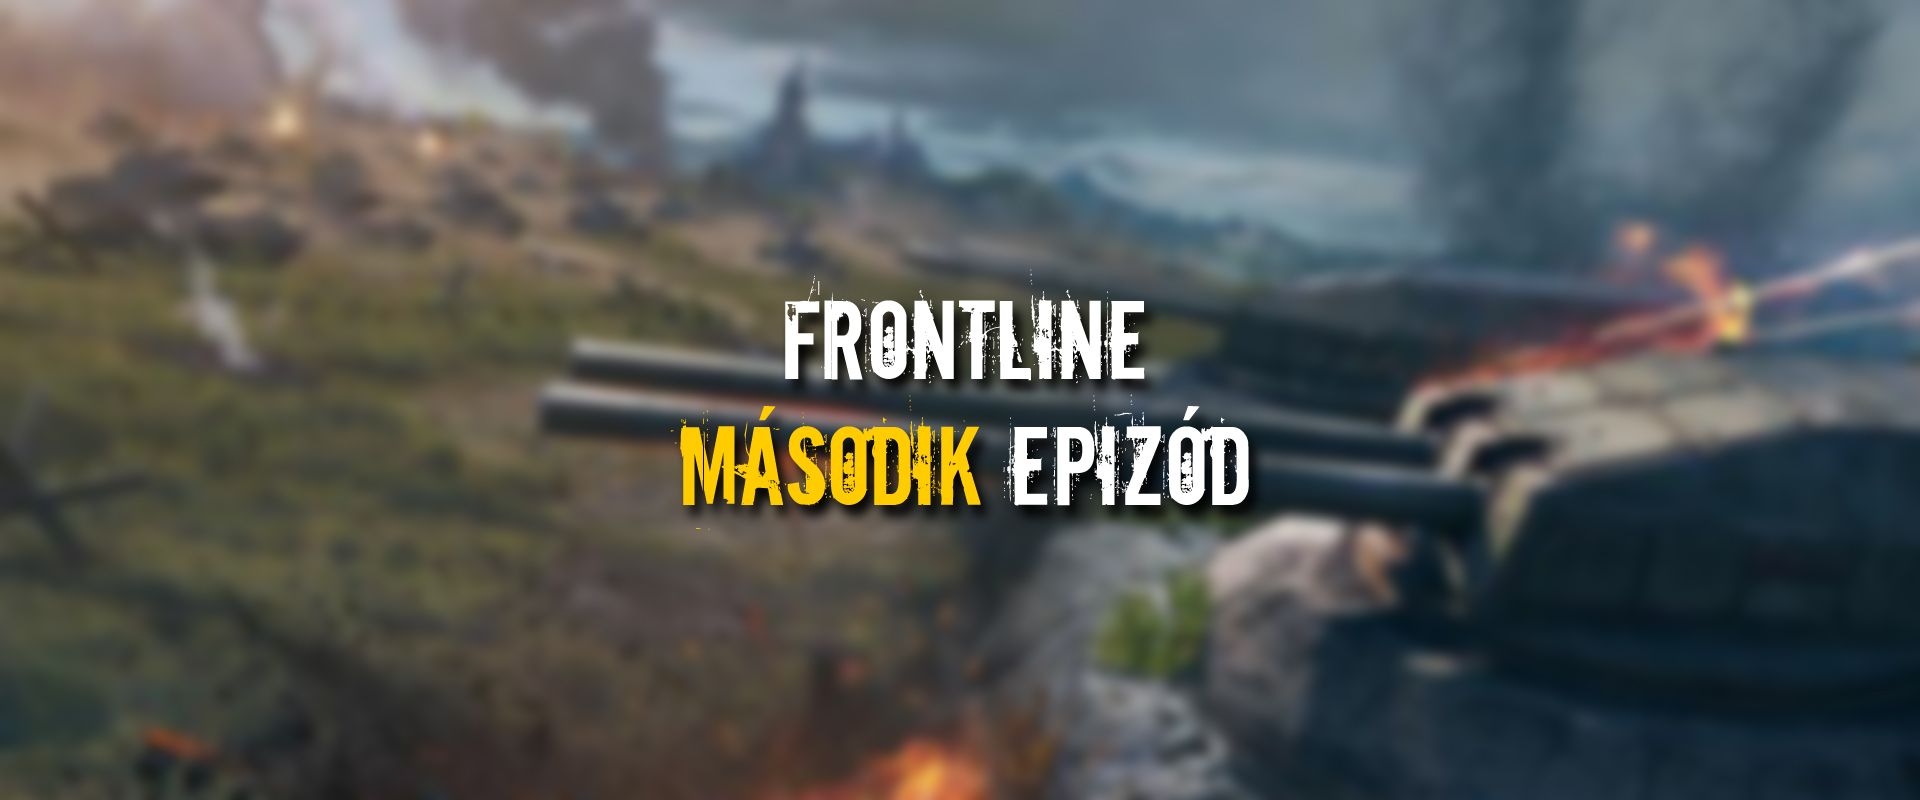 Jövőhéten szerezhetsz először prémium tankot Frontlineból!